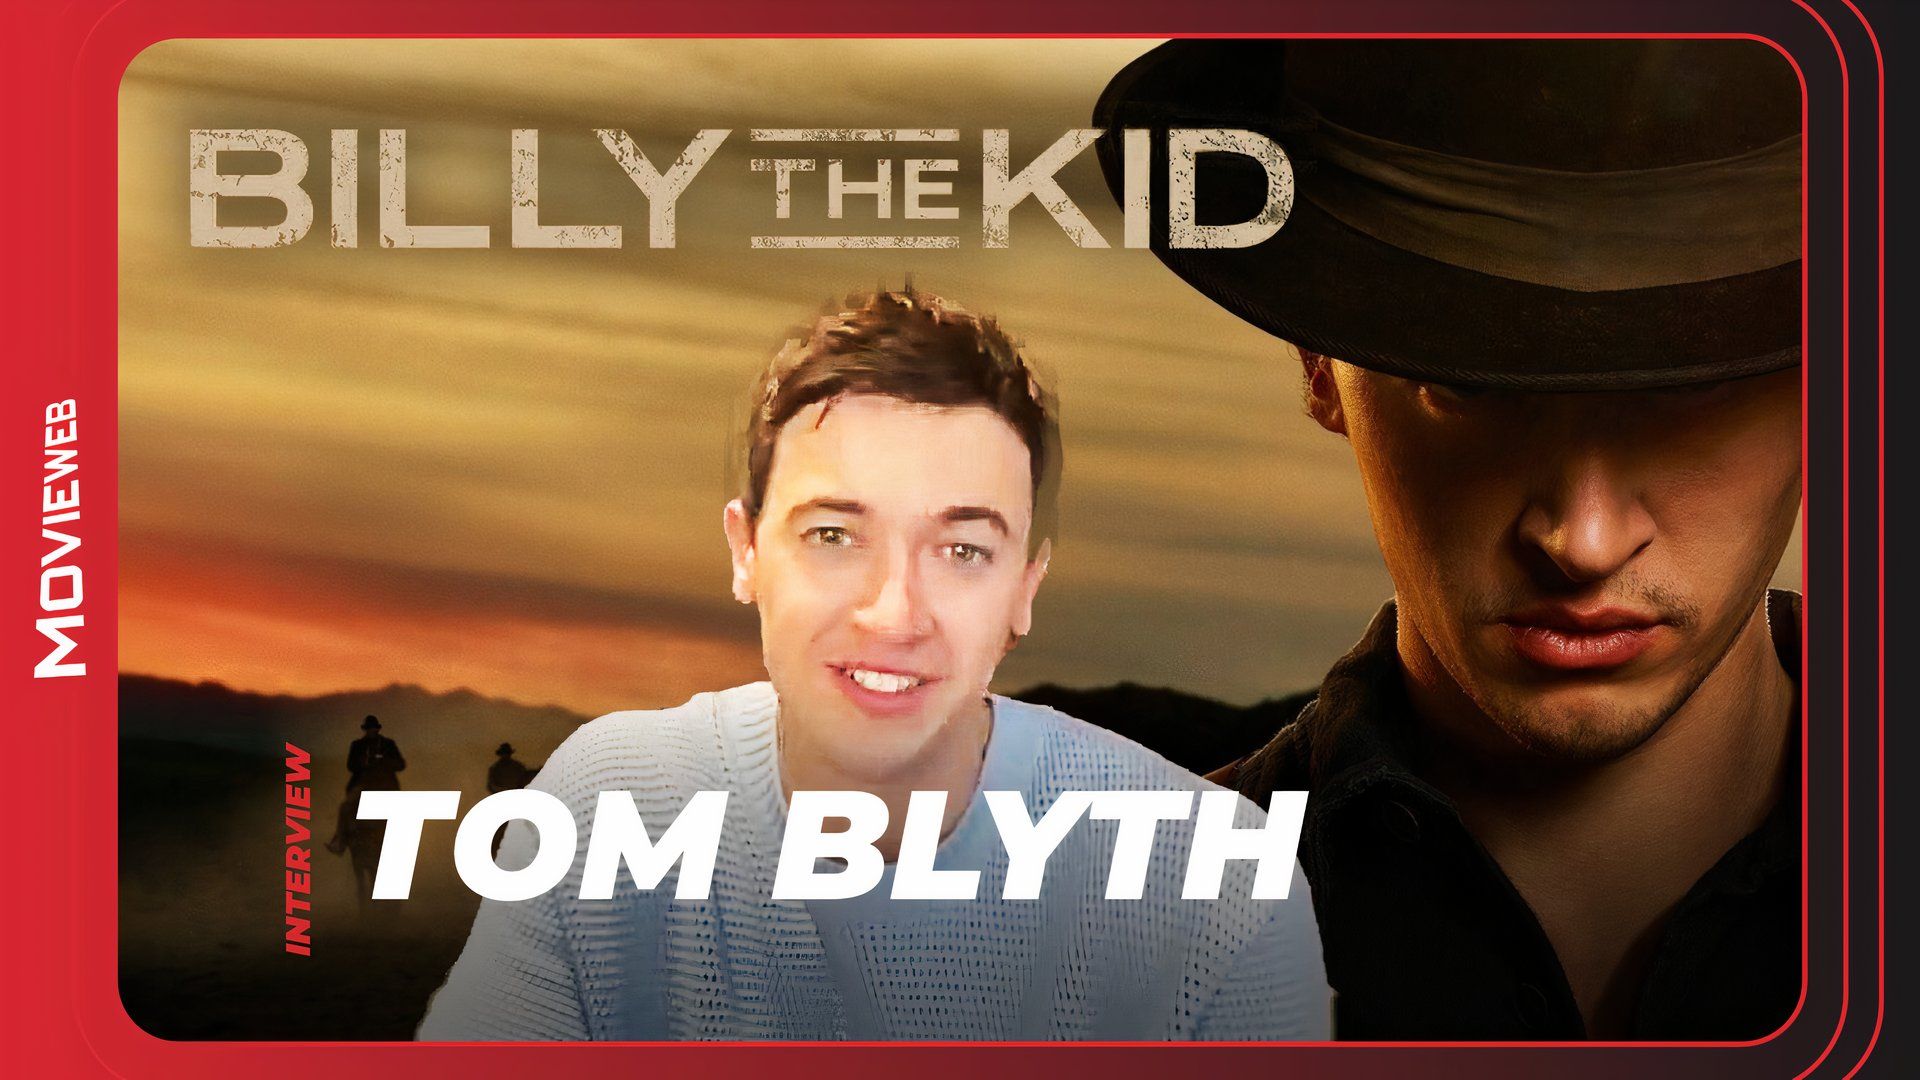 Billy the Kid - Tom Blyth